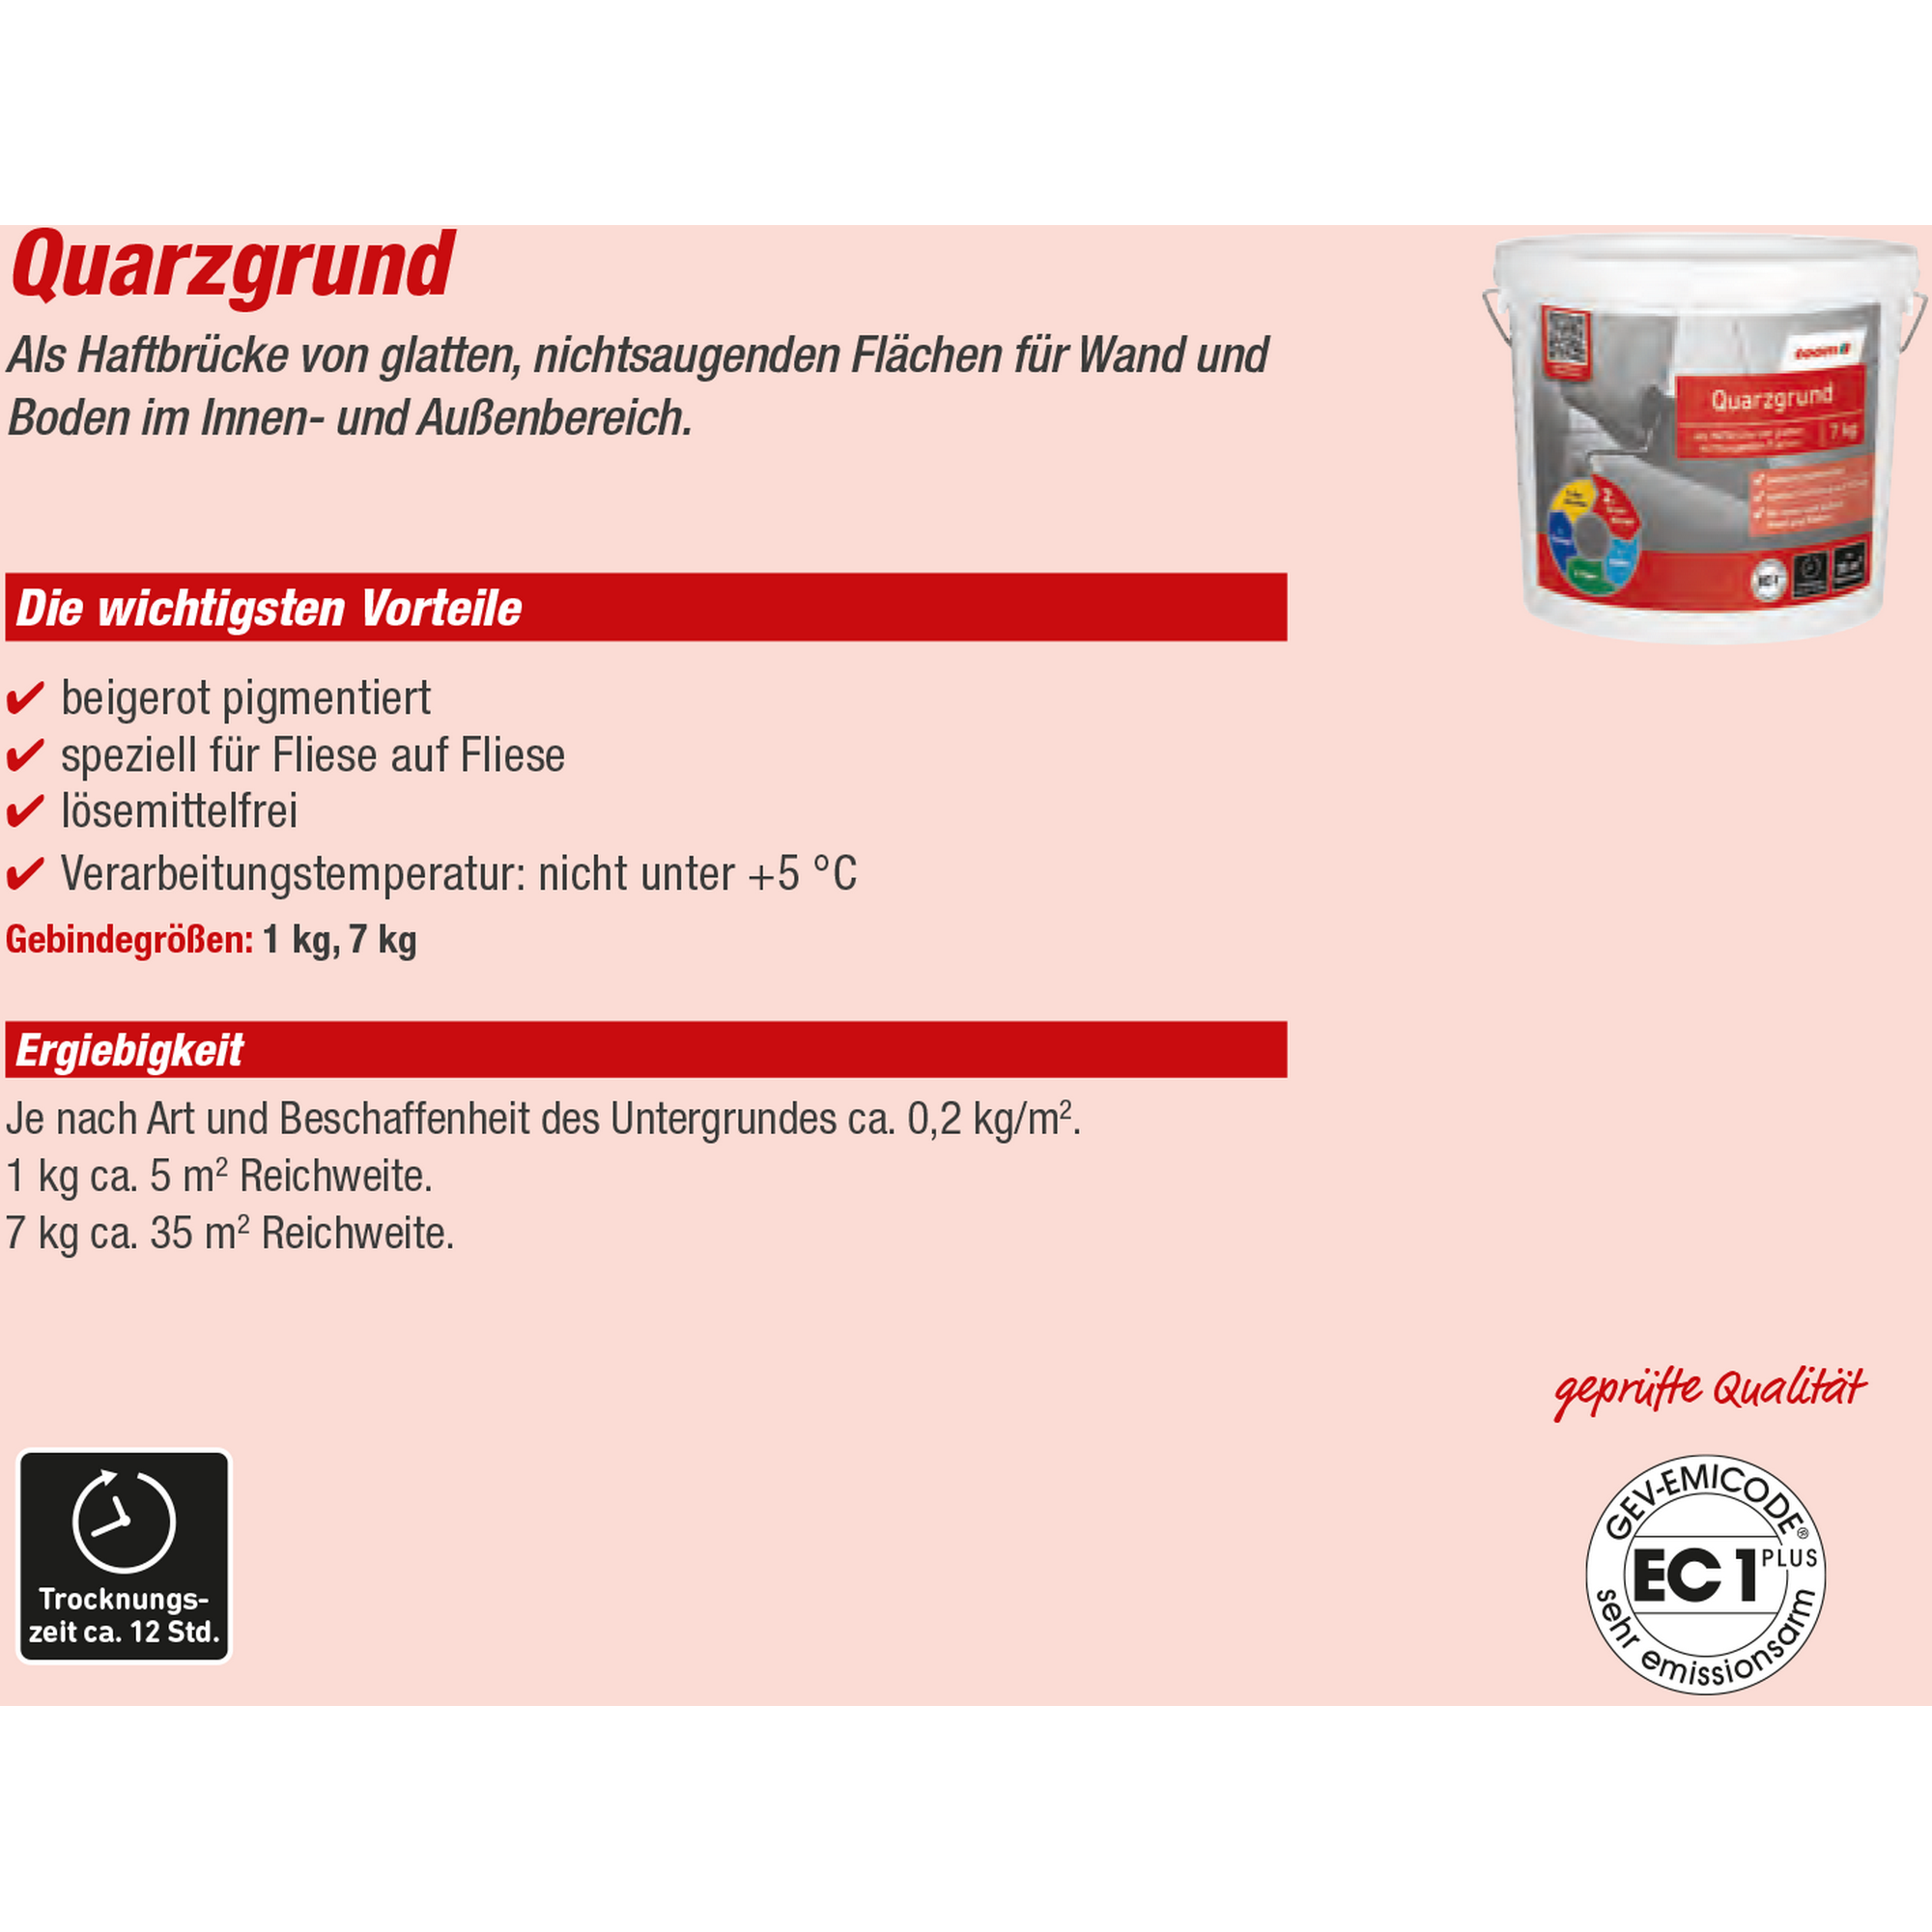 Quarzgrund 1 kg + product picture